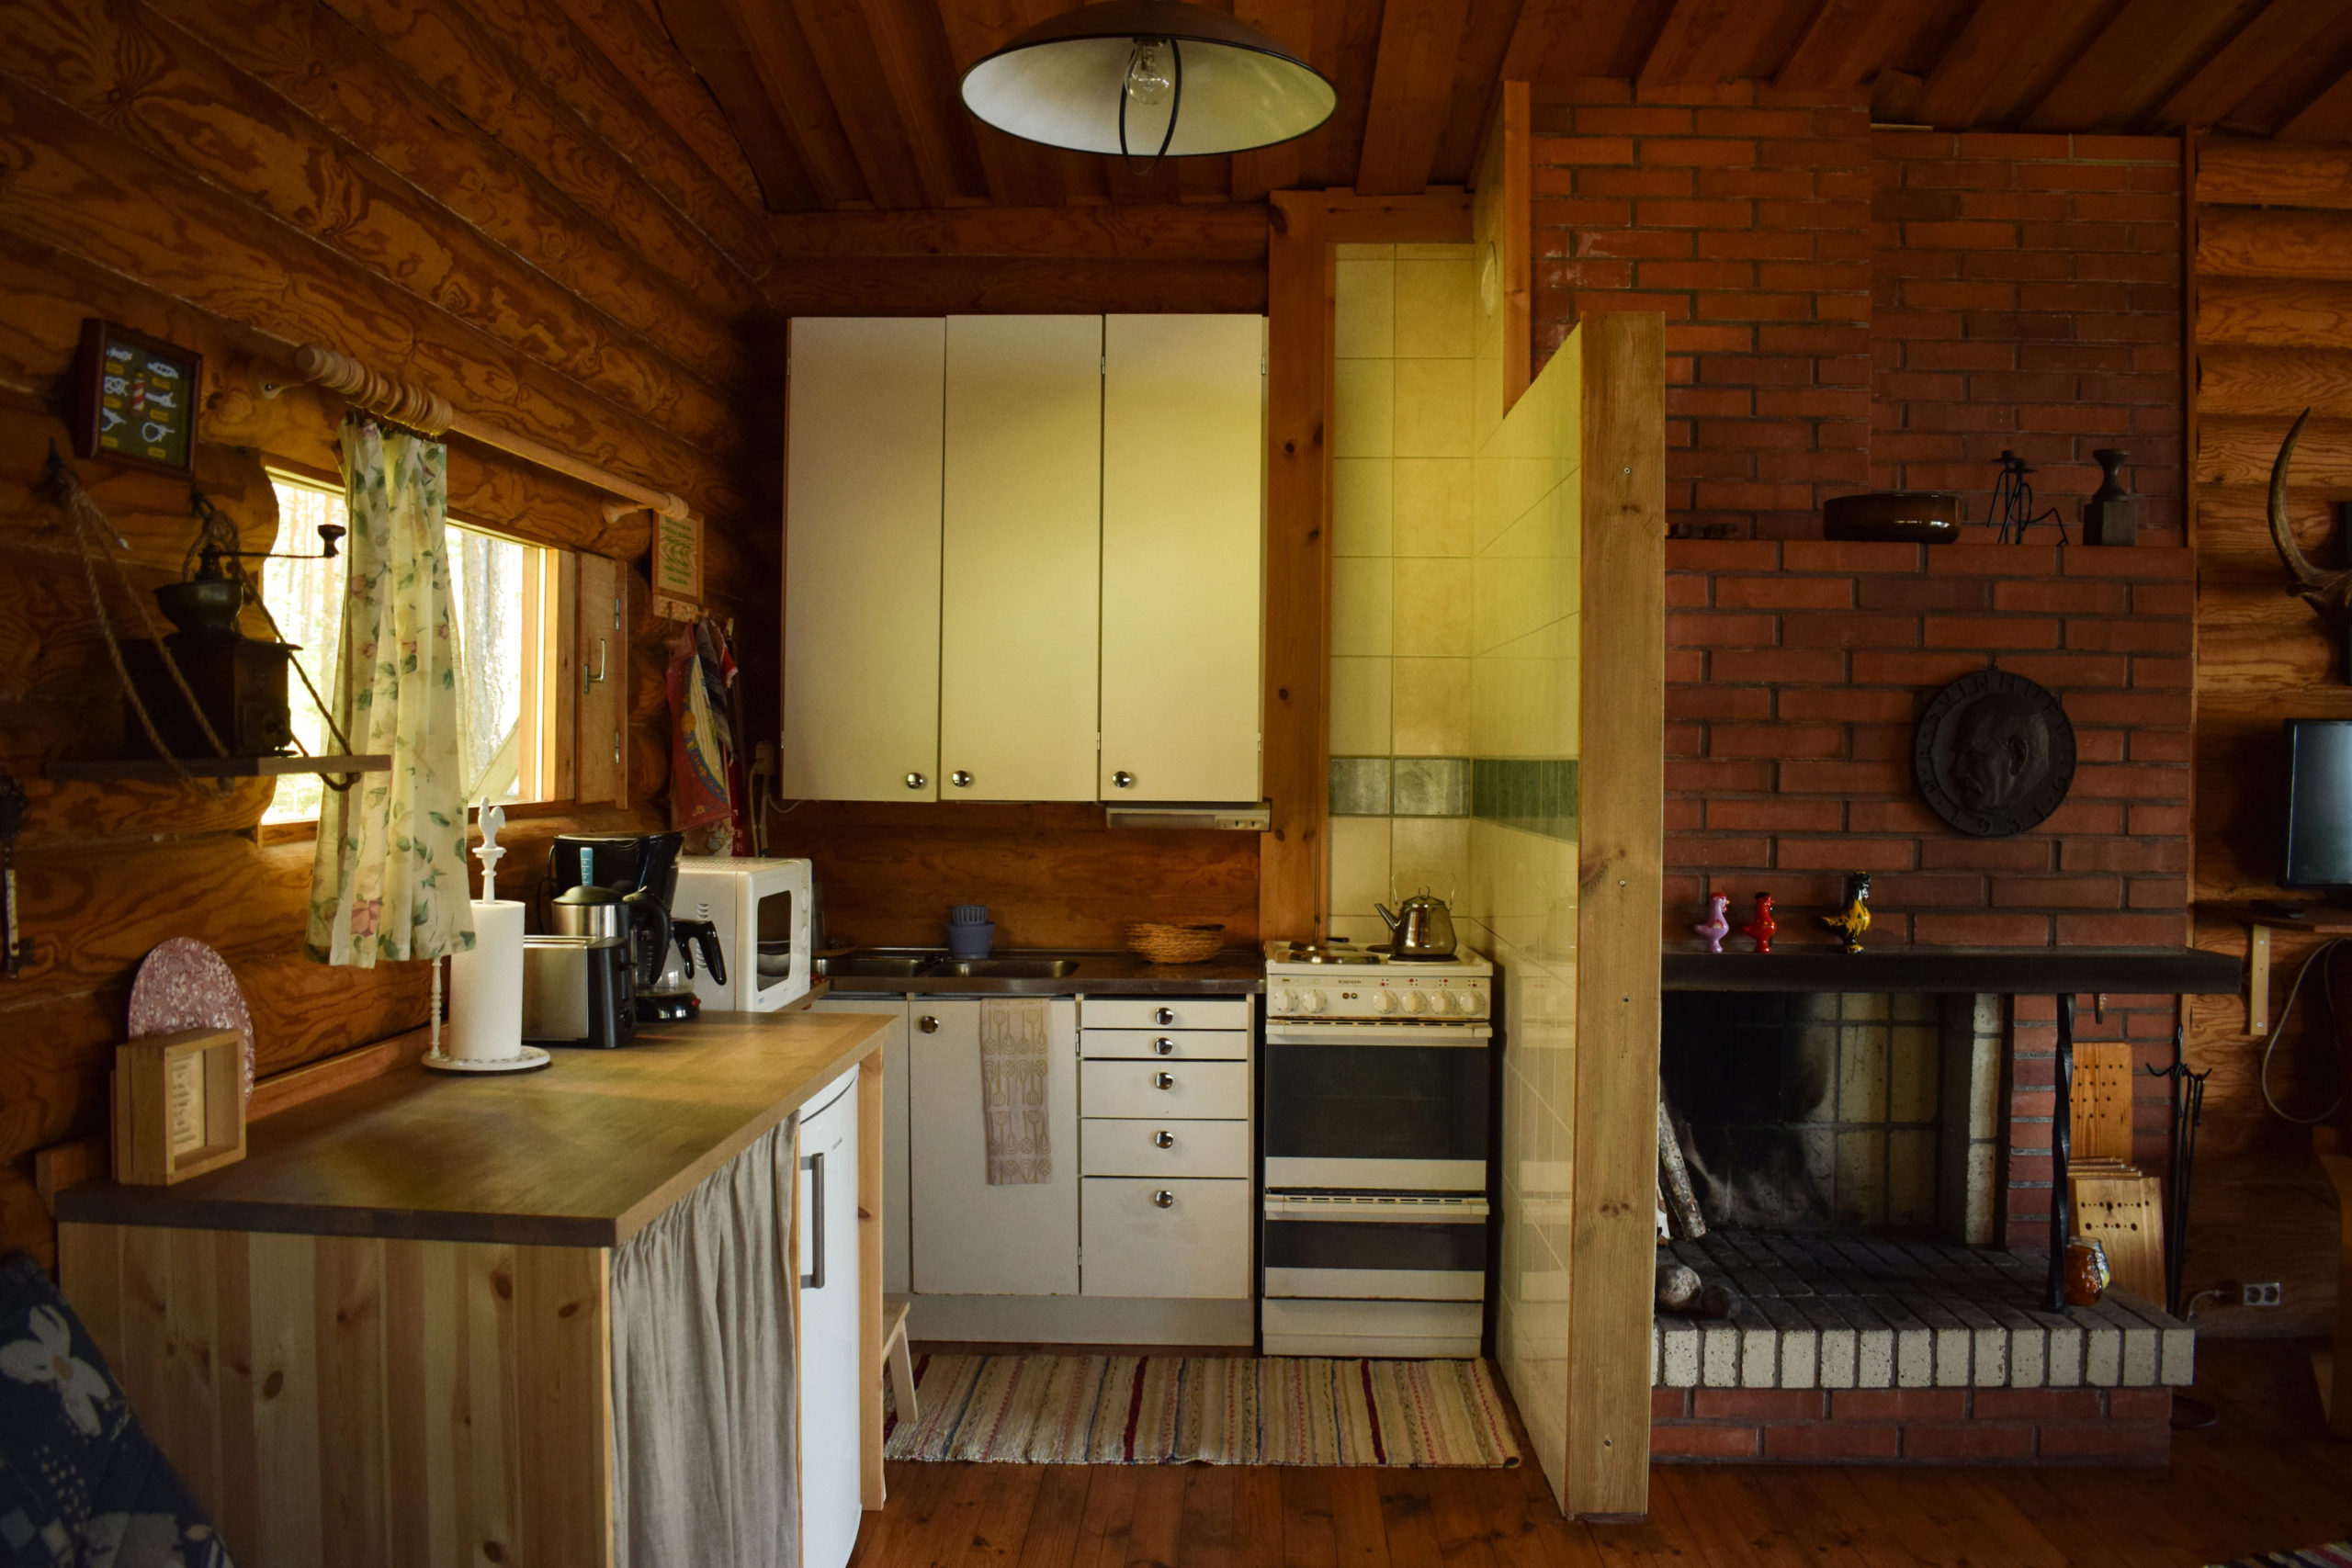 Kitchen of Kukkoniemen Lomamökit traditional Finnish rental cottages in Punkaharju, Saimaa